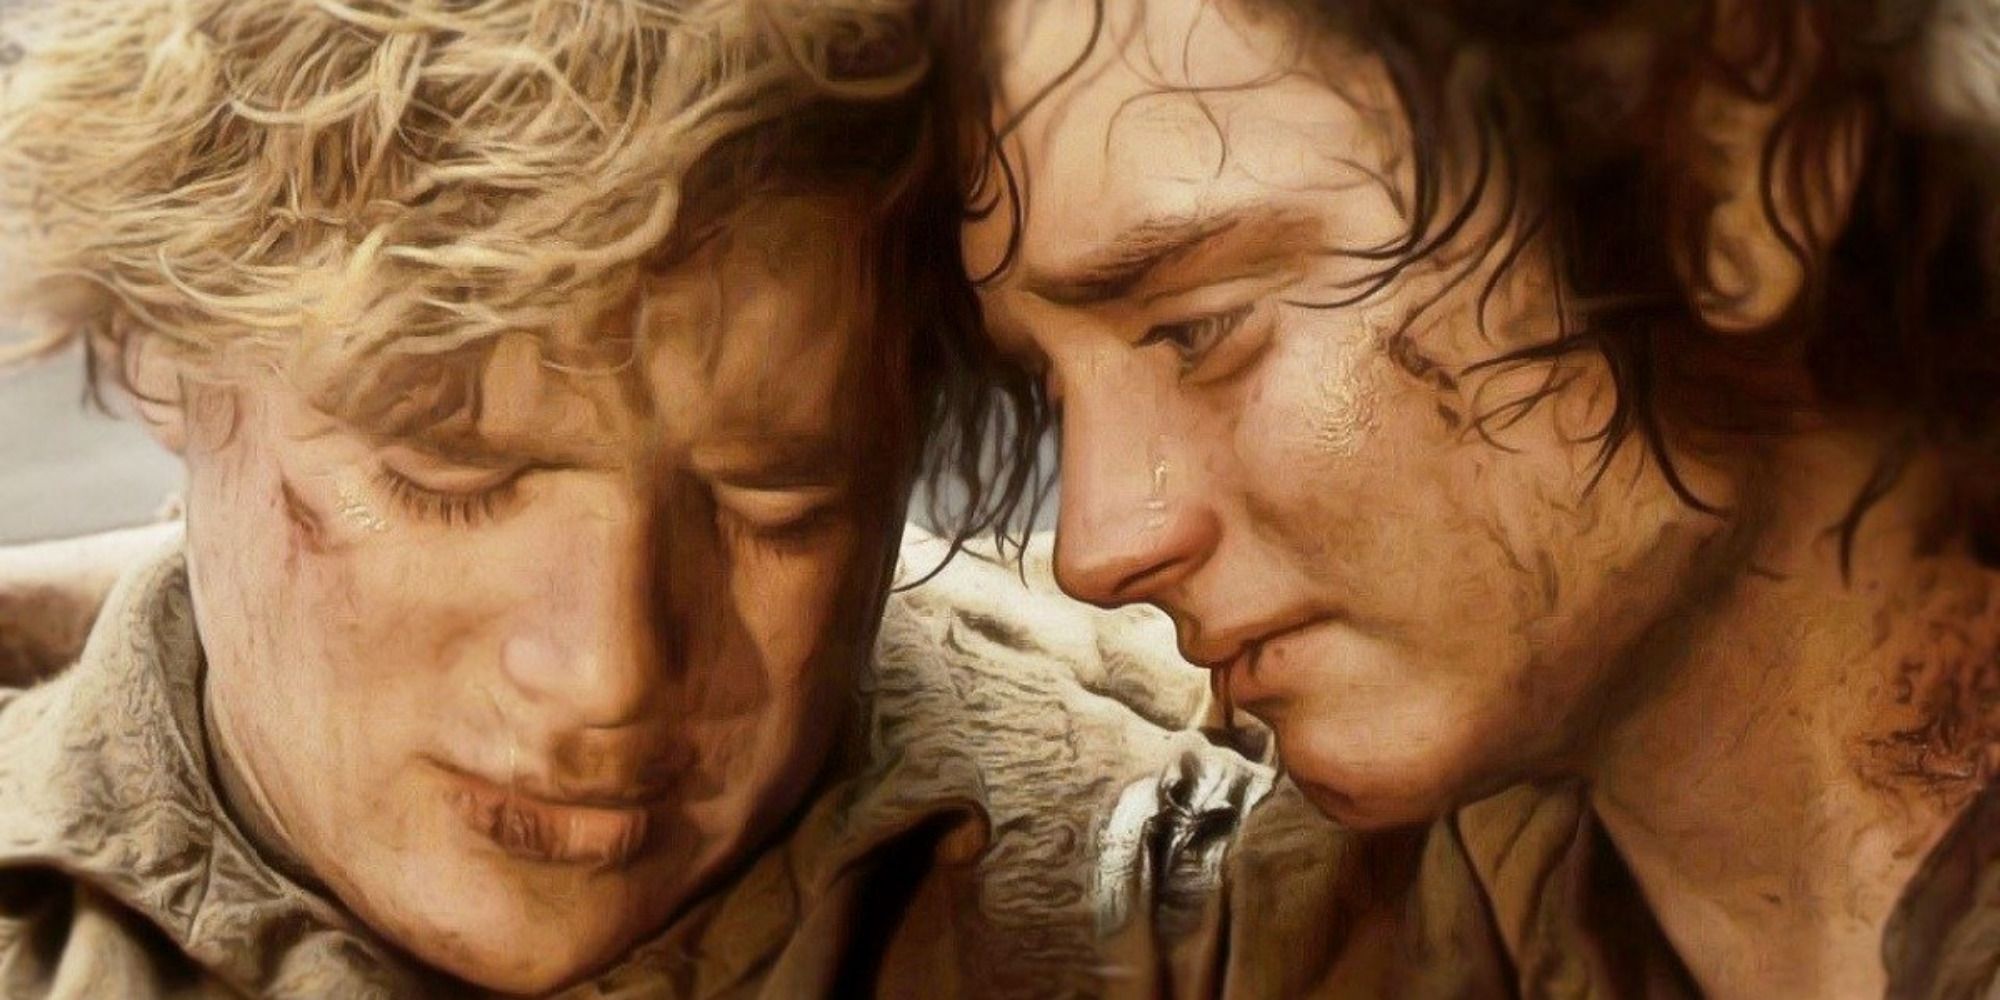 Sam y Frodo de "El Señor de los Anillos"muy juntos, luciendo derrotados y exhaustos.